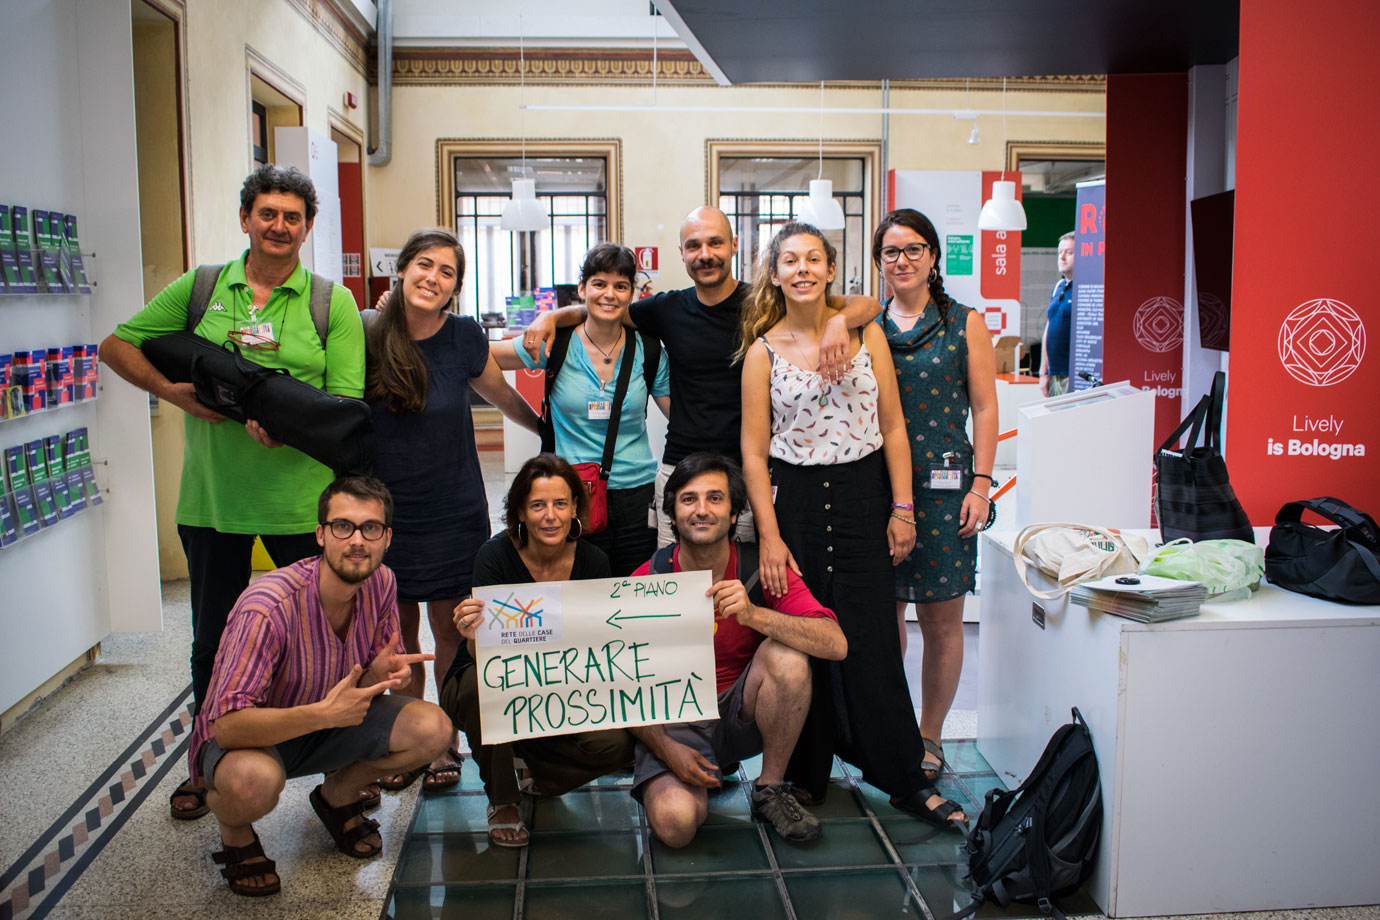 La Biennale della Prossimità si terrà a Taranto